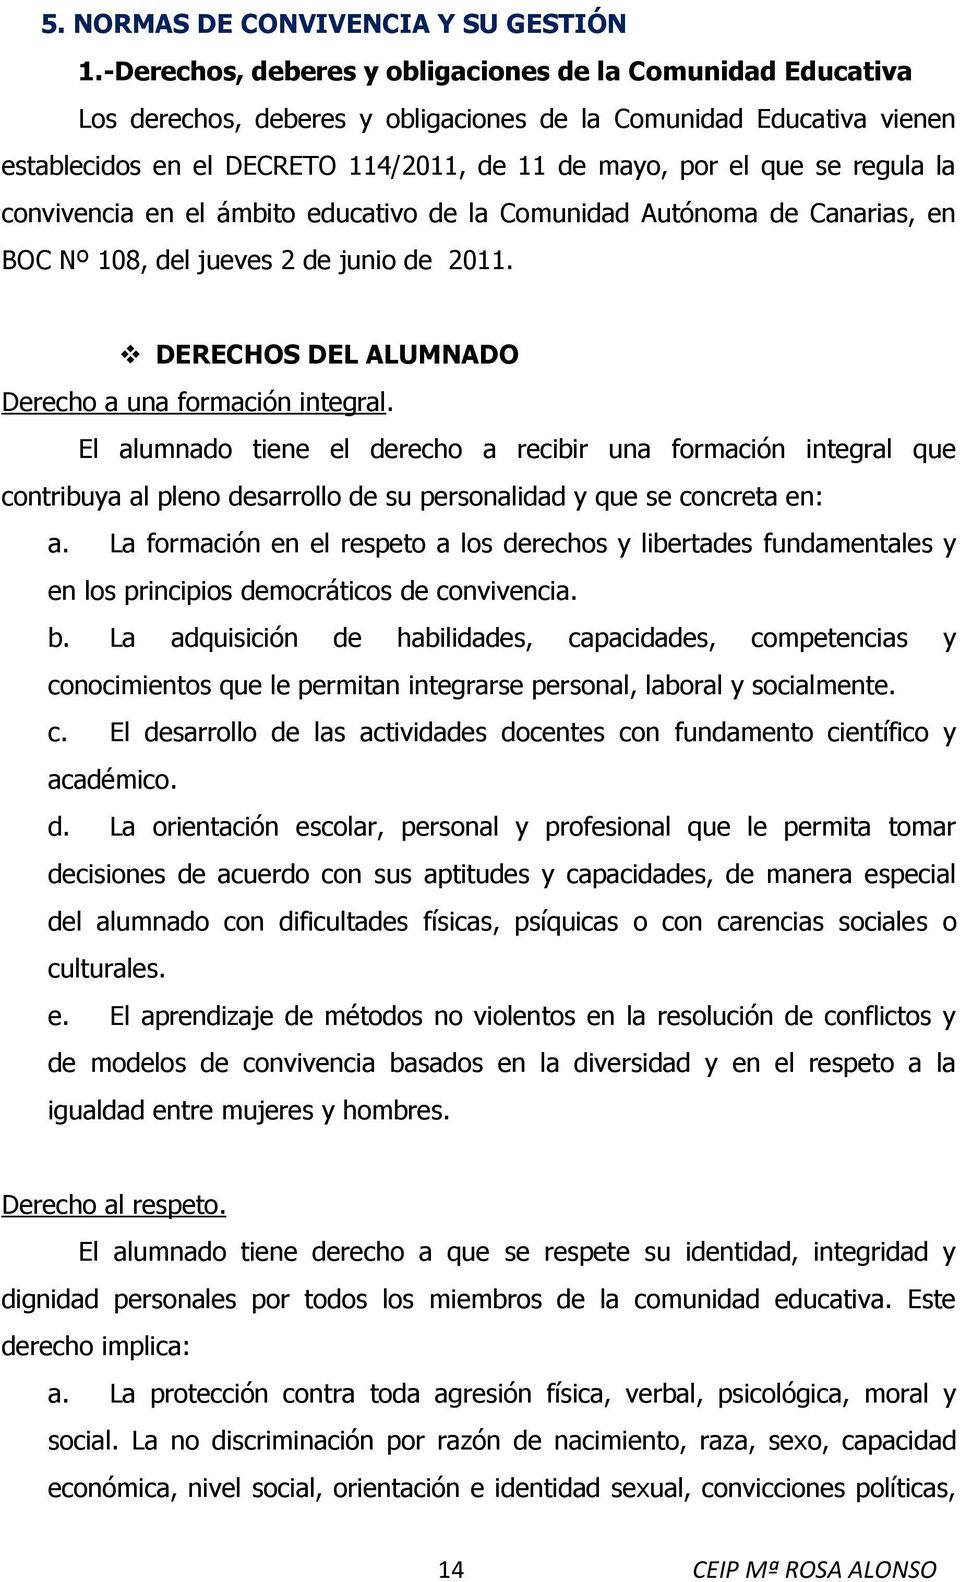 regula la convivencia en el ámbito educativo de la Comunidad Autónoma de Canarias, en BOC Nº 108, del jueves 2 de junio de 2011. DERECHOS DEL ALUMNADO Derecho a una formación integral.